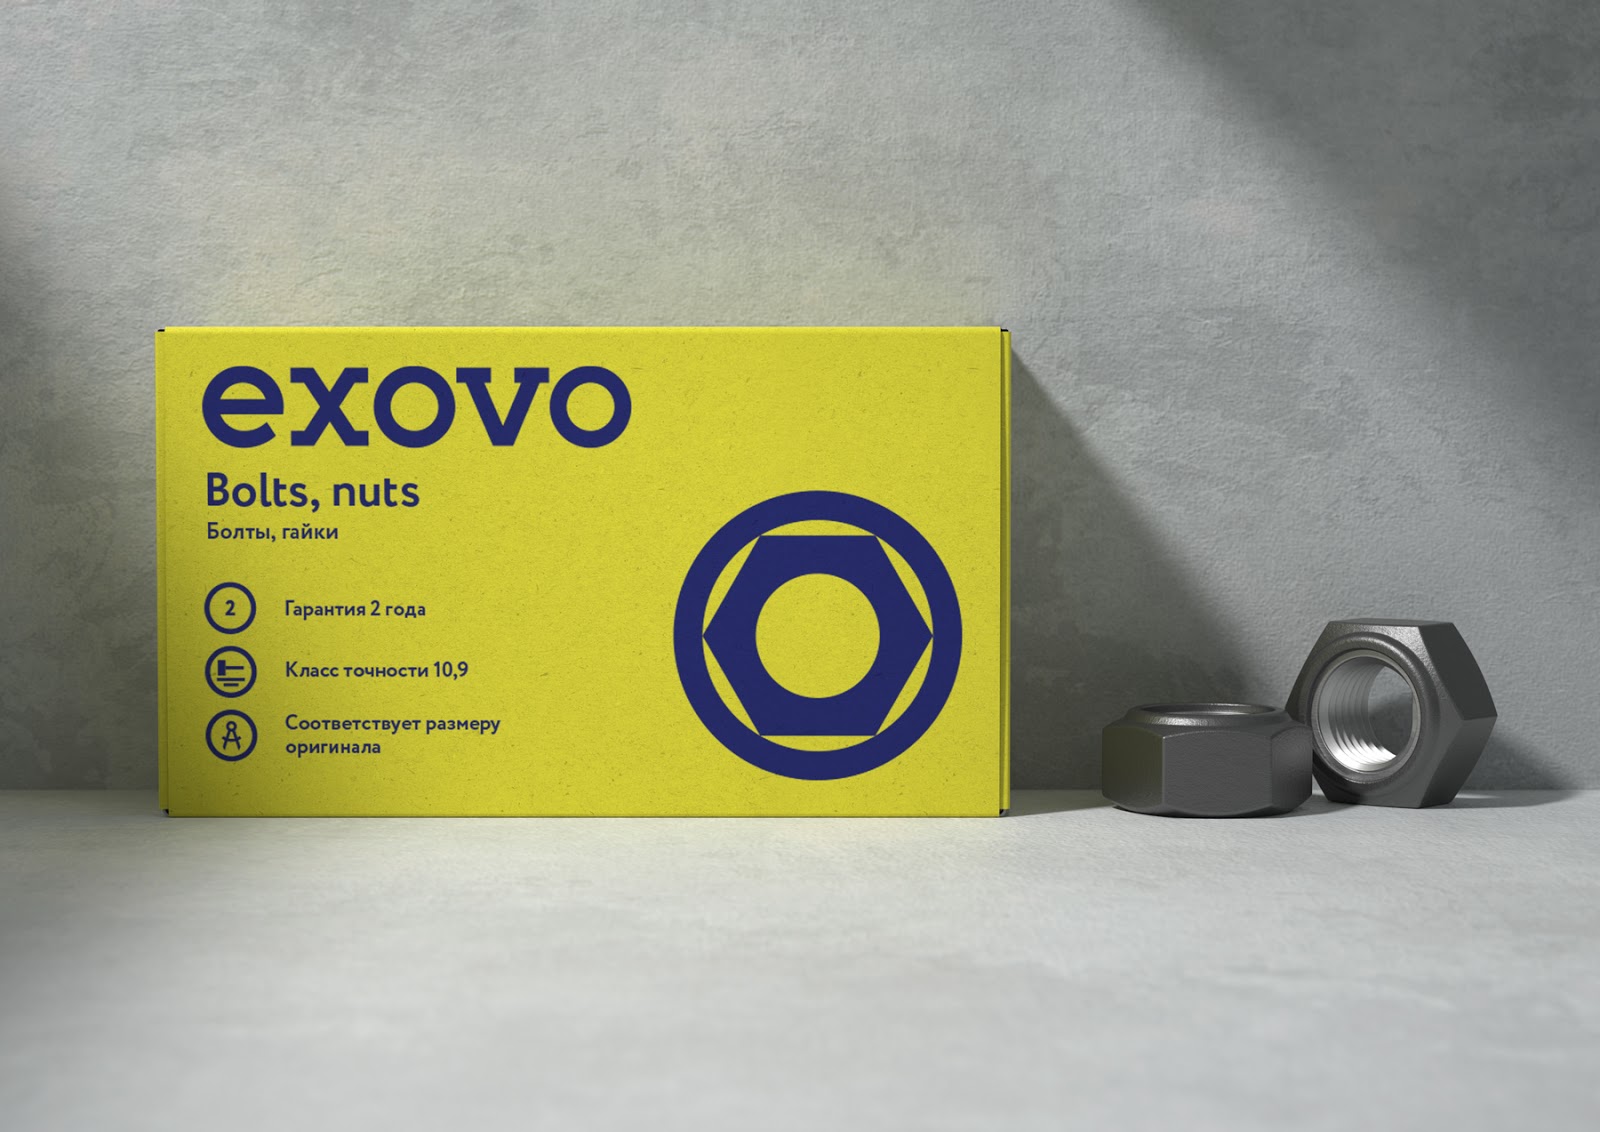 Exovo汽车配件包装设计欣赏(图7)